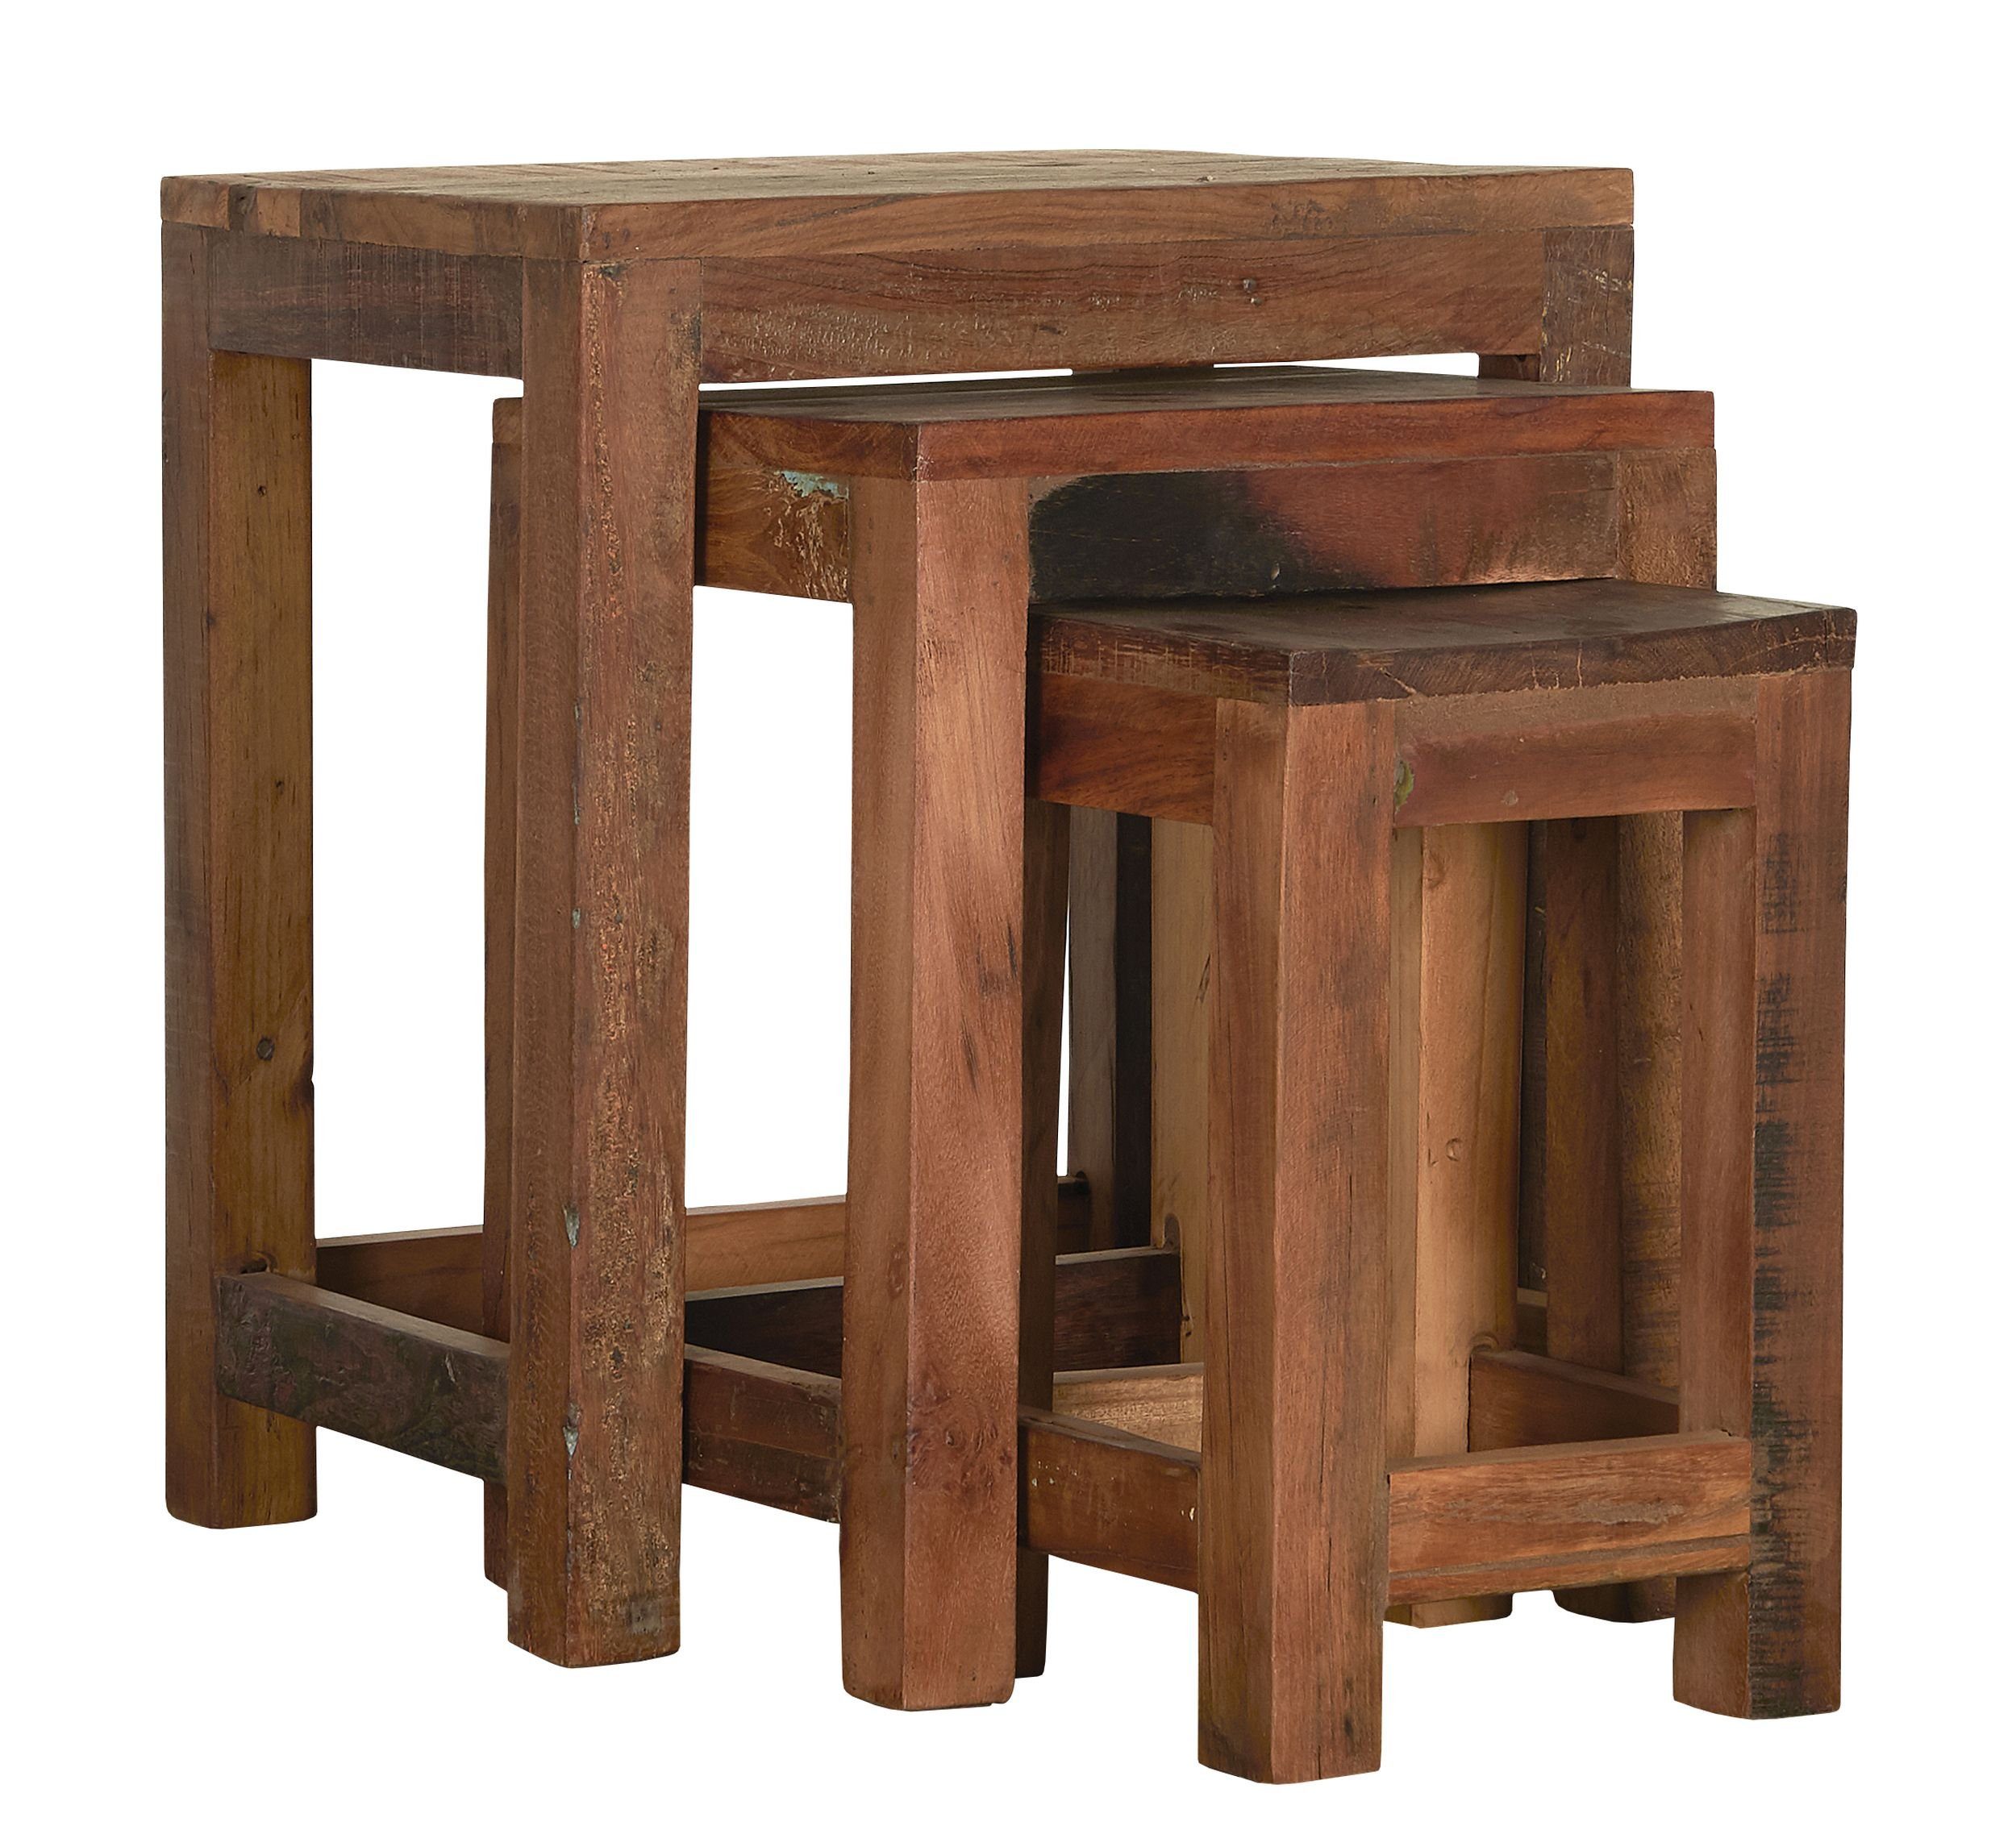 Laursen Laursen Holz Unika 3er Beistelltisch Beistelltisch Hocker Set Tisch Alt Ib 2138-00